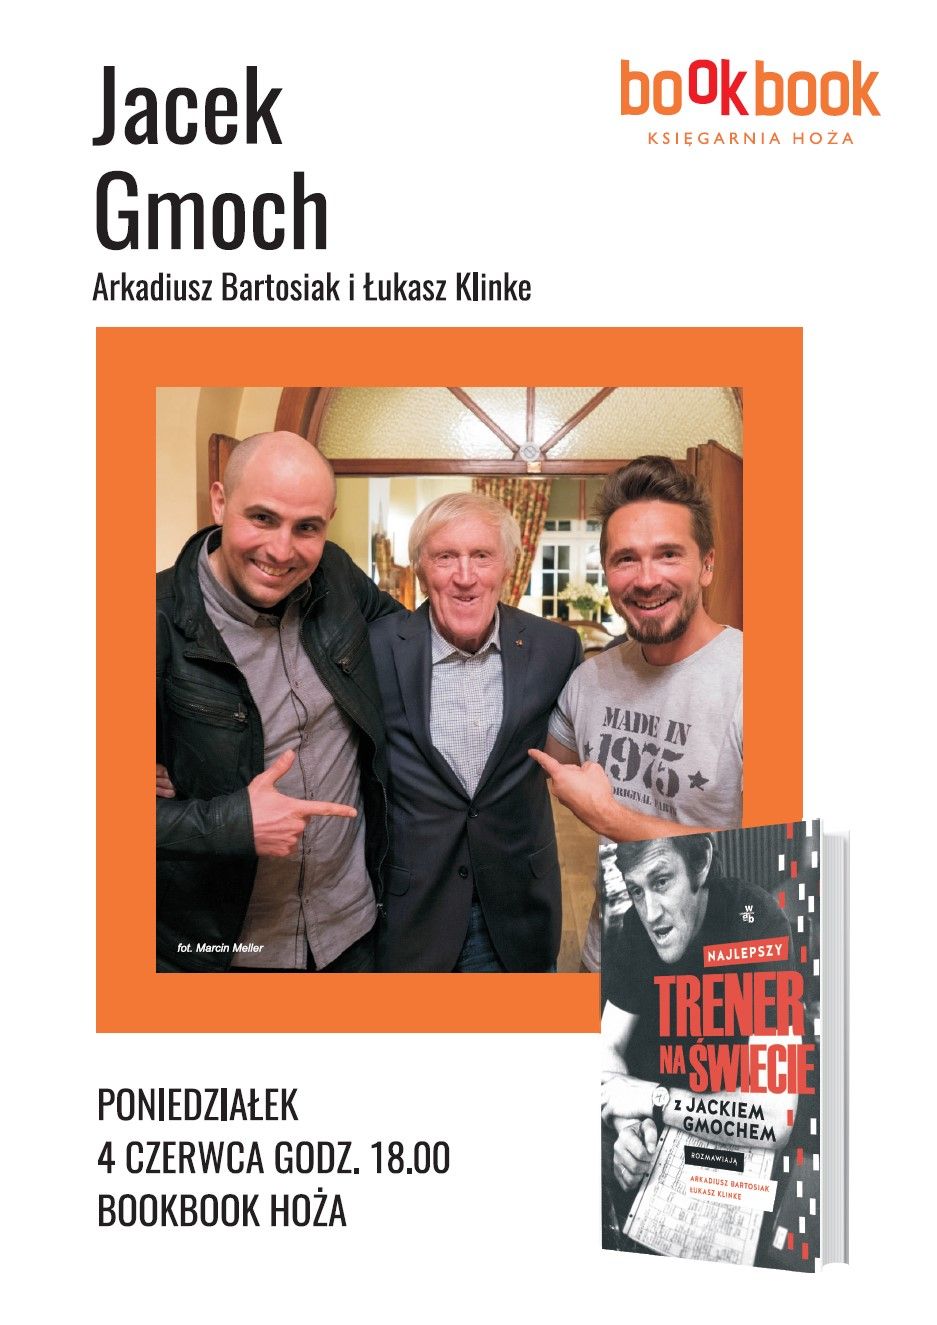  BookBook, Jacek Gmoch, "Najlepszy trener na świecie"